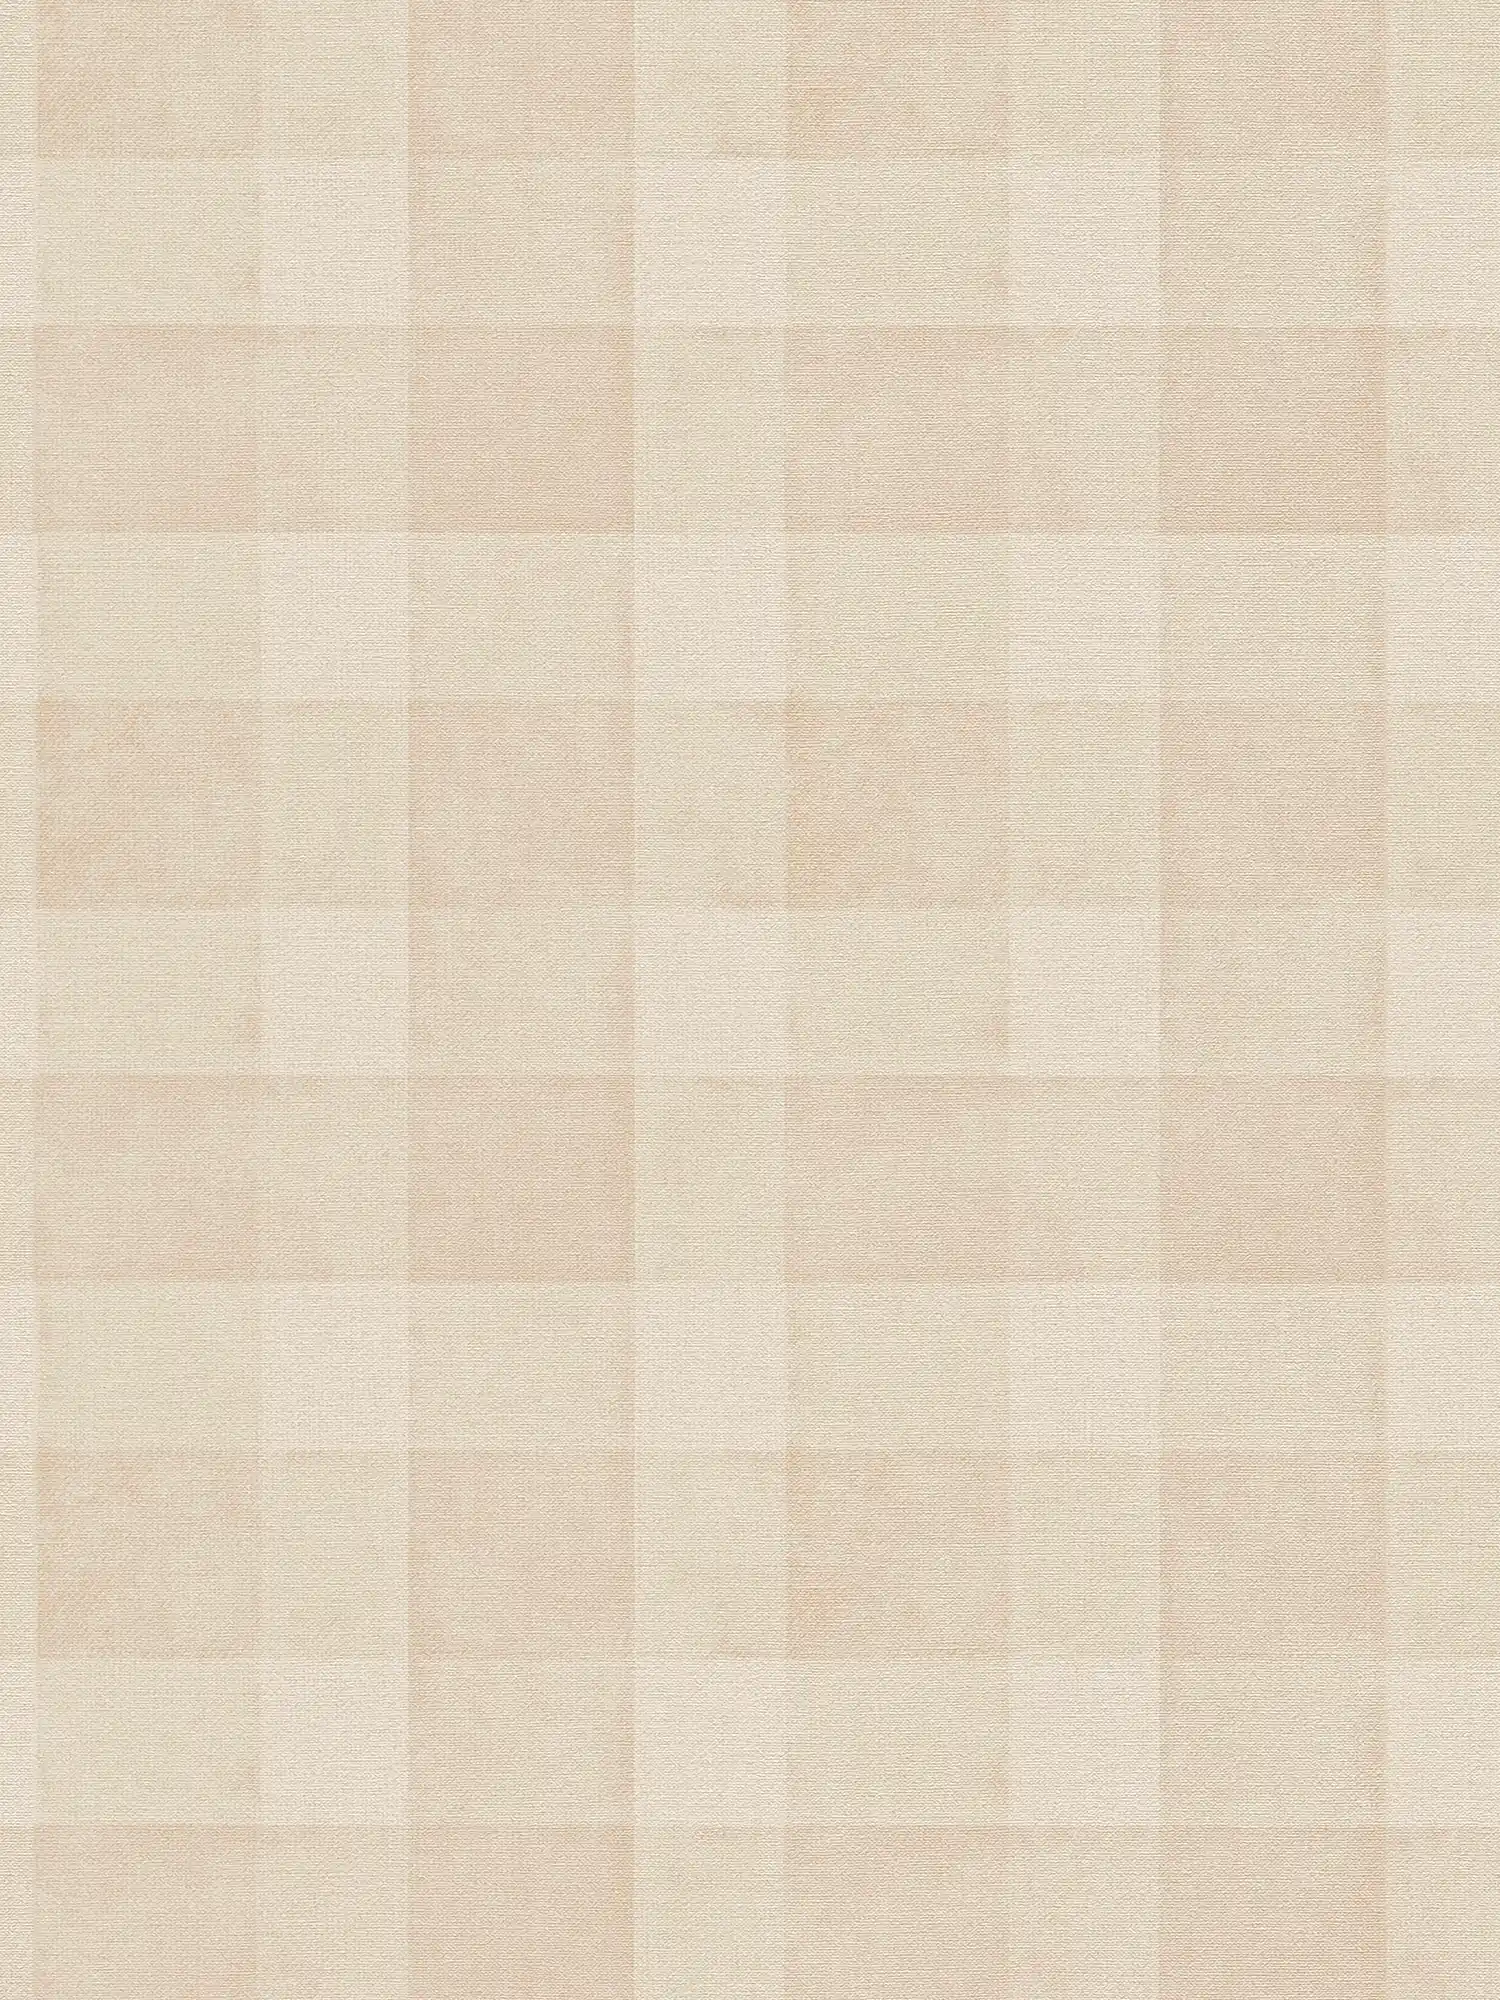 Carta da parati in tessuto non tessuto senza PVC con motivo a quadri e aspetto lino - beige
